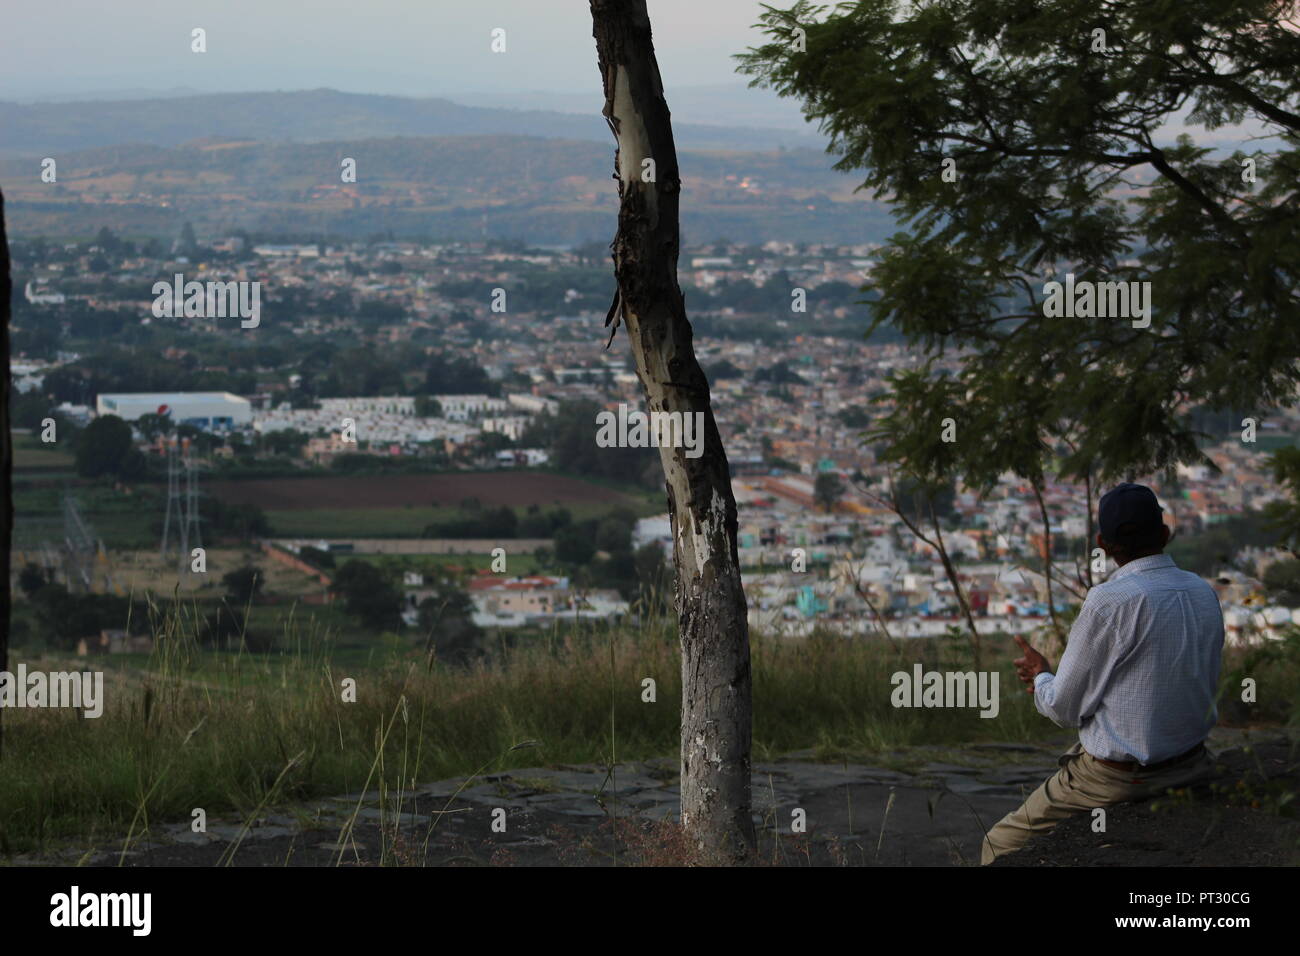 señor apreciando el paisaje desde el cerro de la reina en Tonala, vista panoramica de la barranca de Huentitan en un atardecer de la ciudad Stock Photo